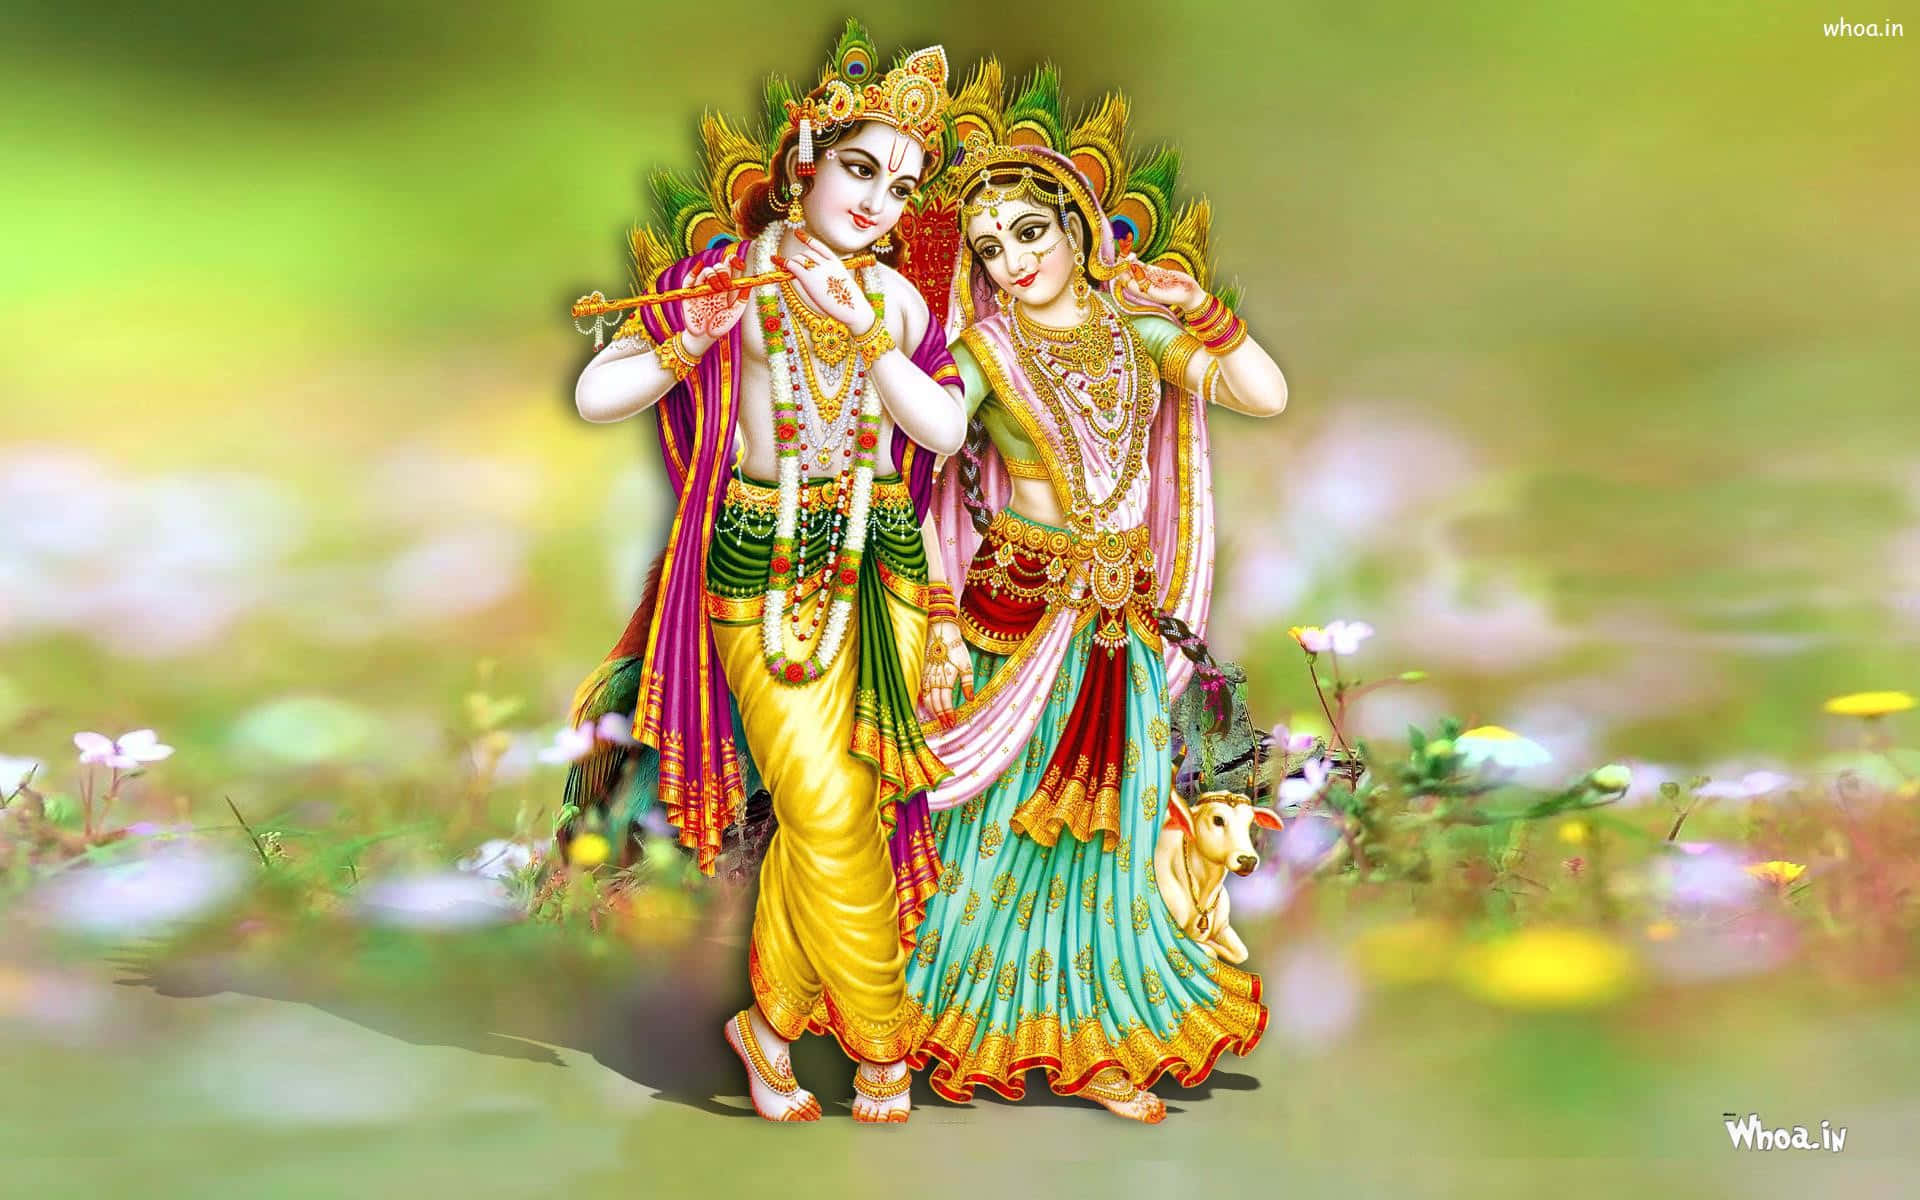 Love divine: Radha and Krishna in perfect harmony